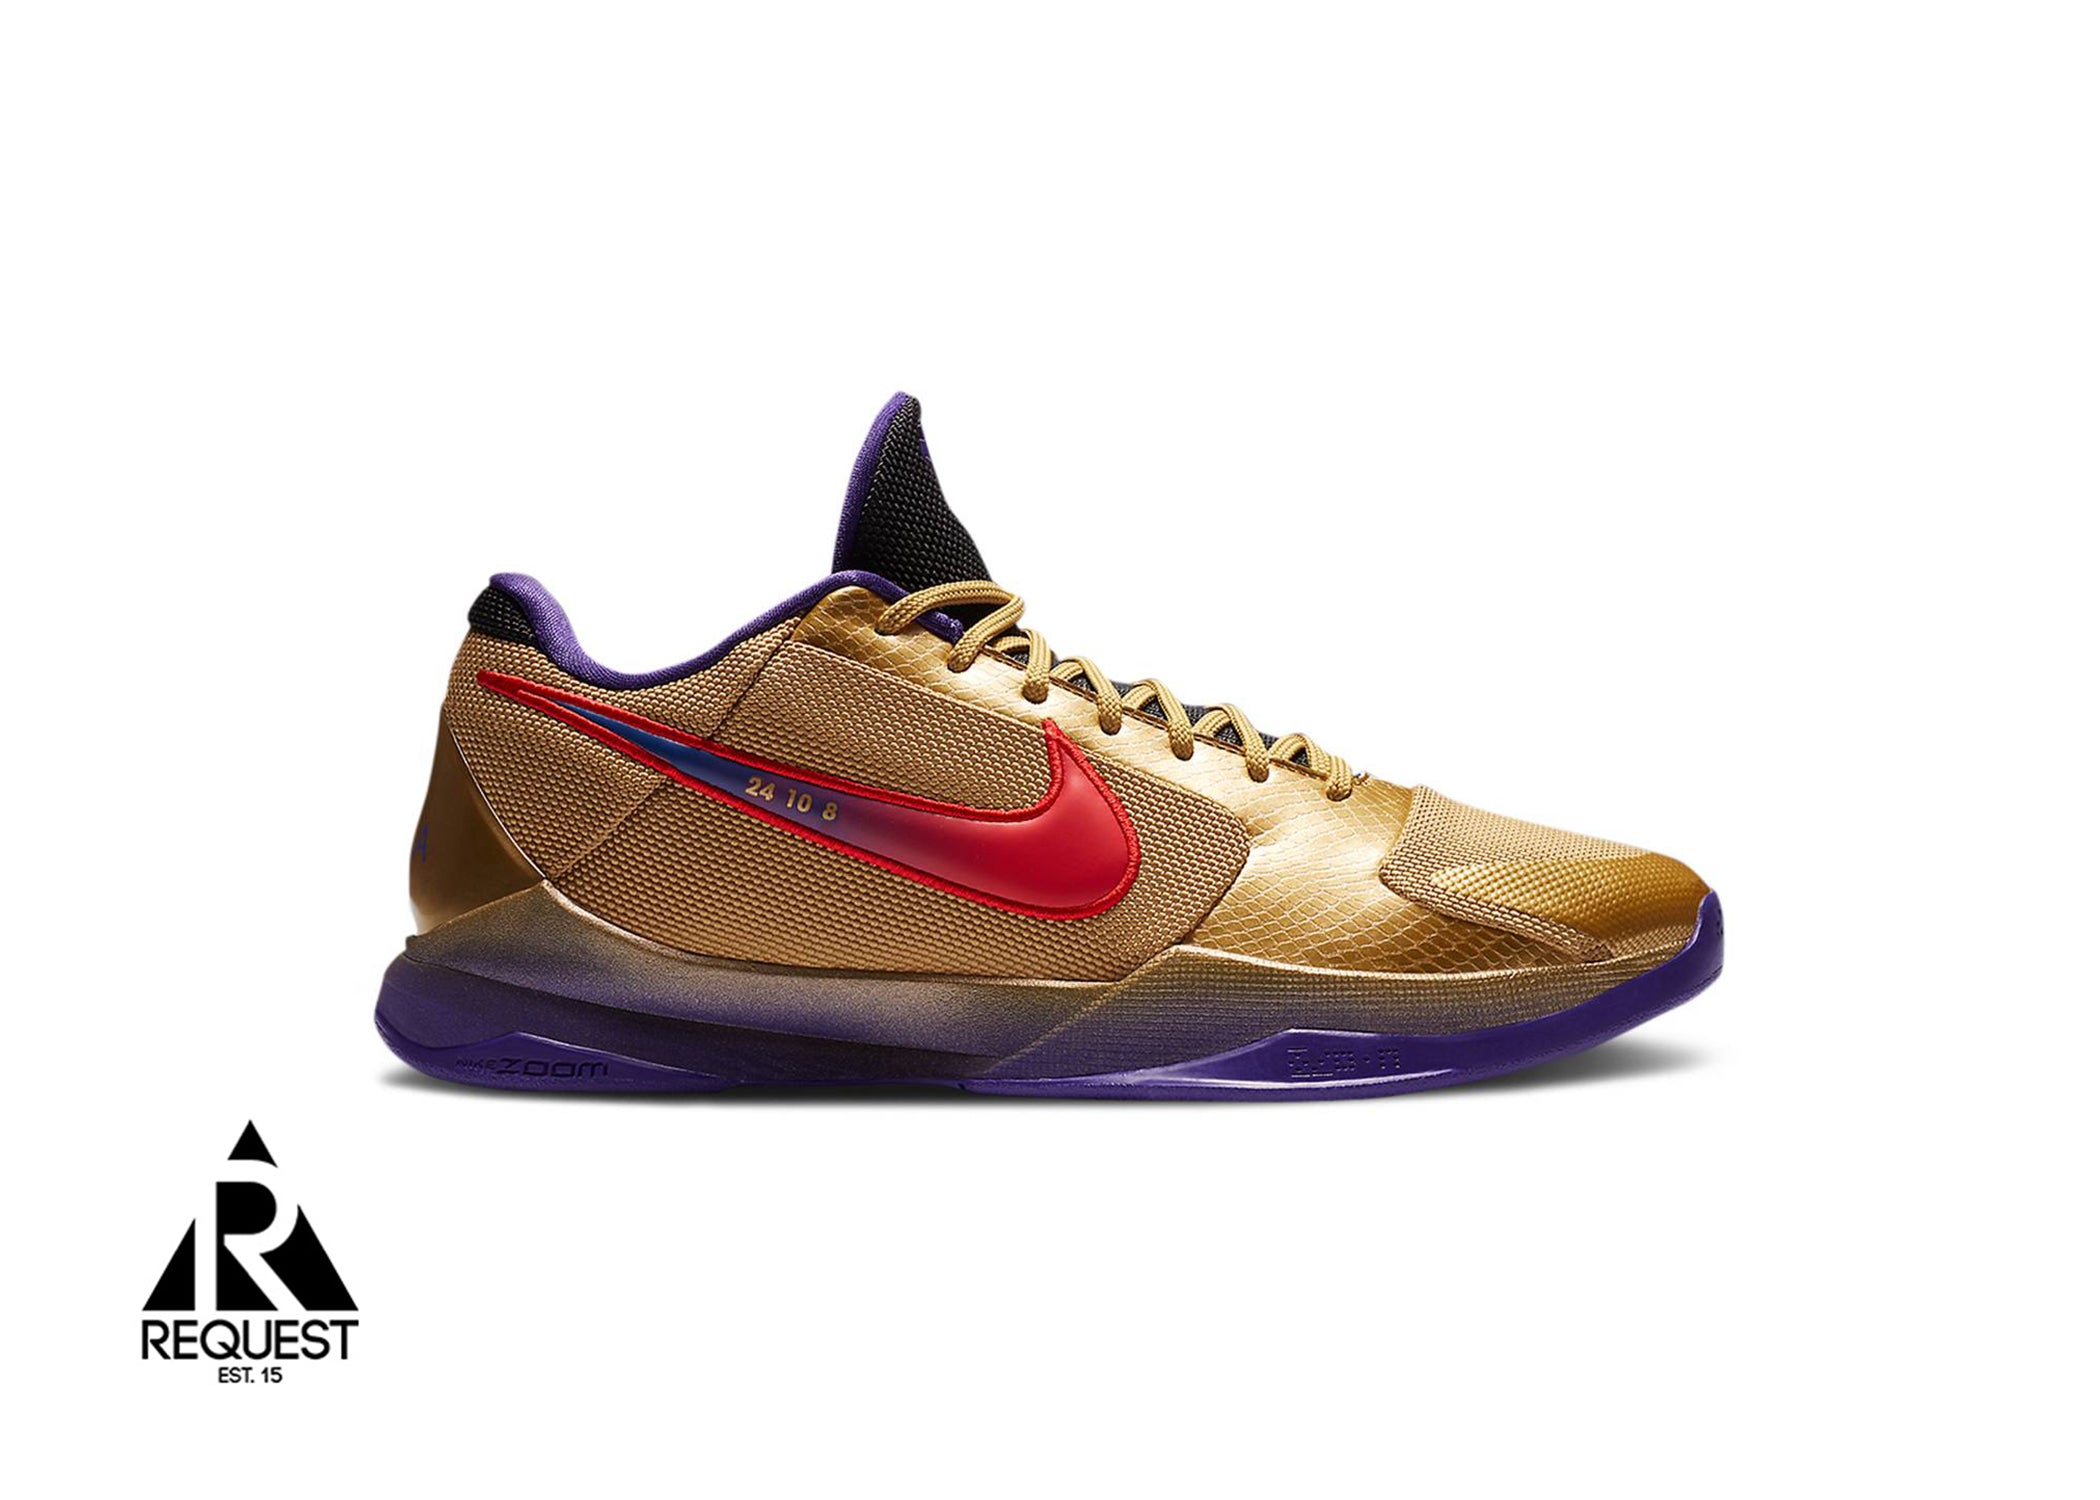 Nike Kobe 5 Proto “Undefeated Hall Of Fame”